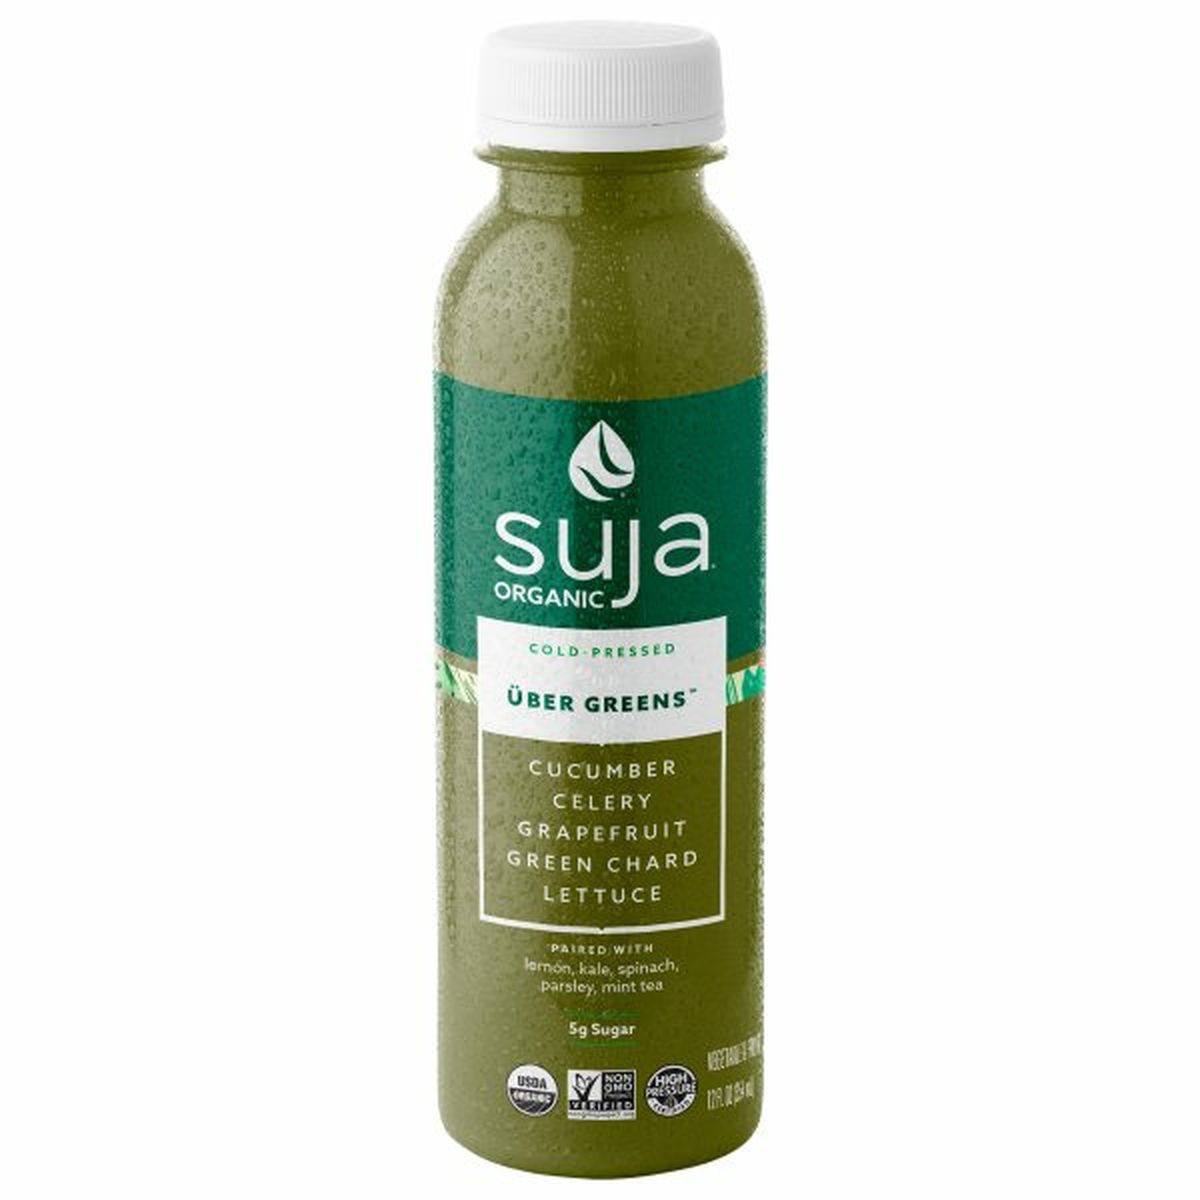 Calories in Suja Vegetable & Fruit Juice Drink, Uber Greens